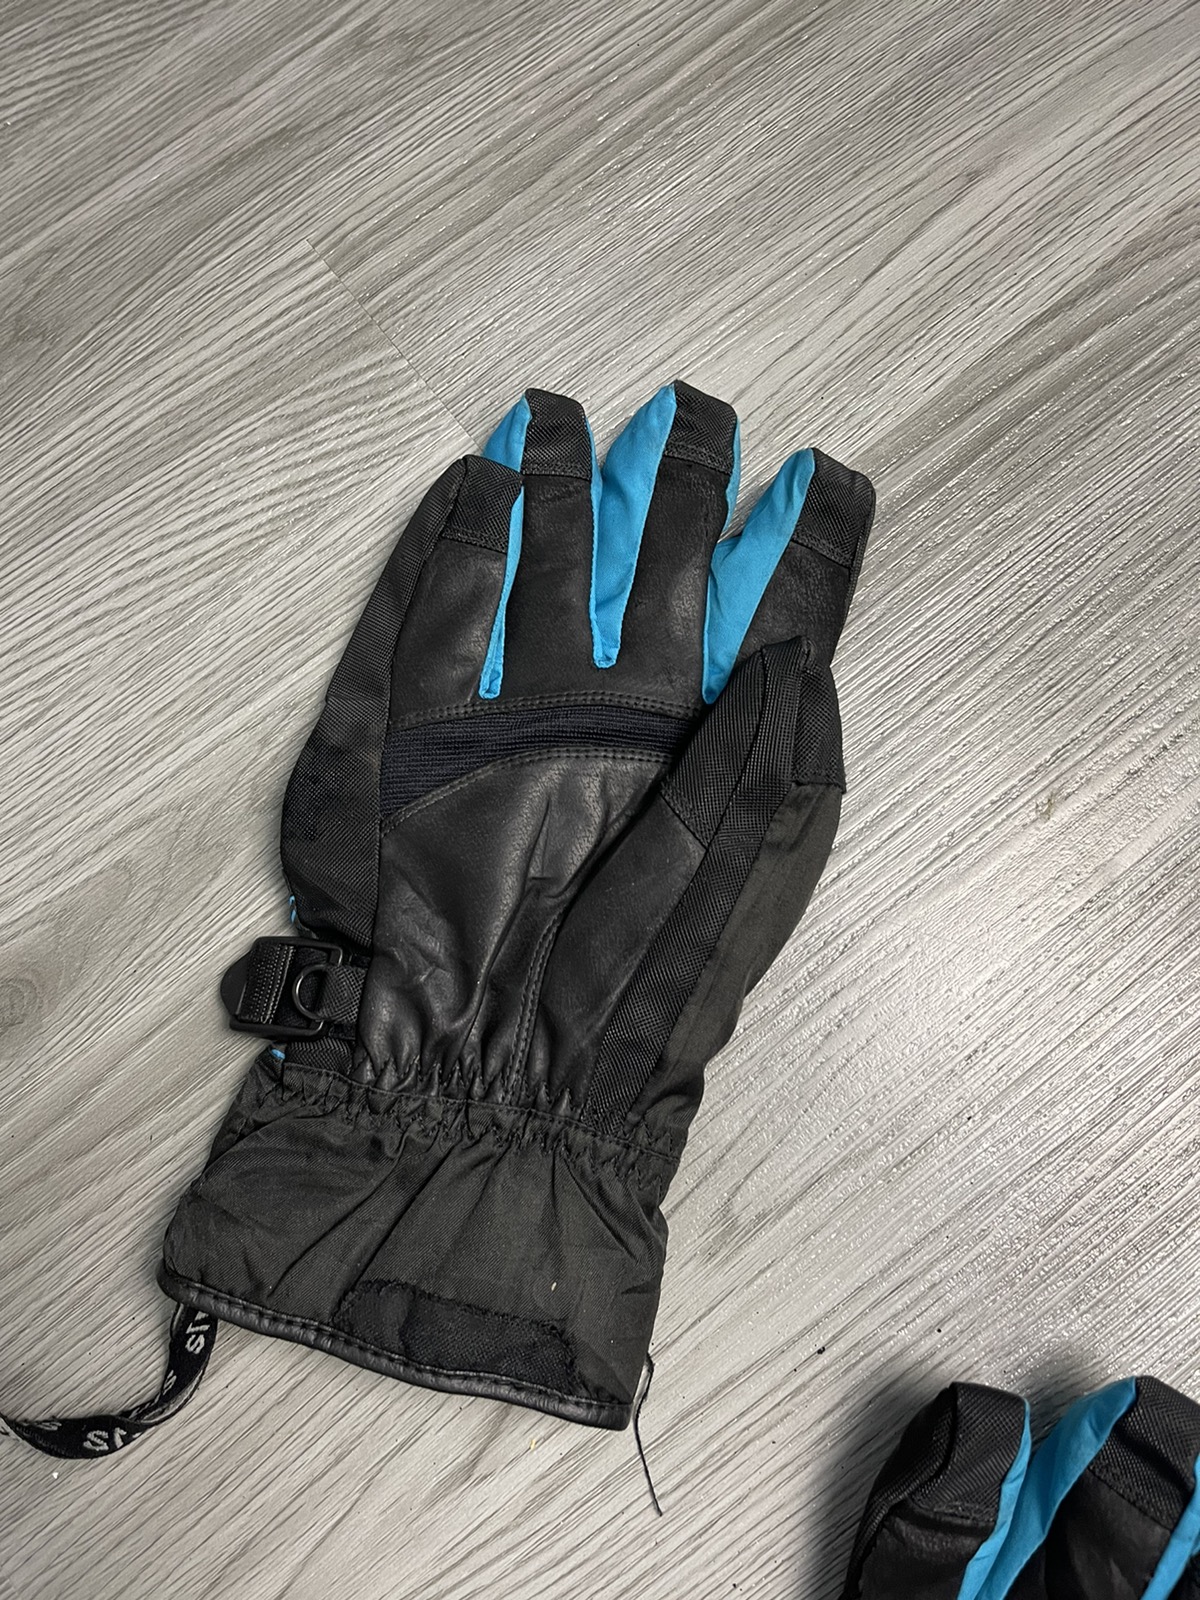 Goretex - Sims GoreTex Snow Glove medium size - 6